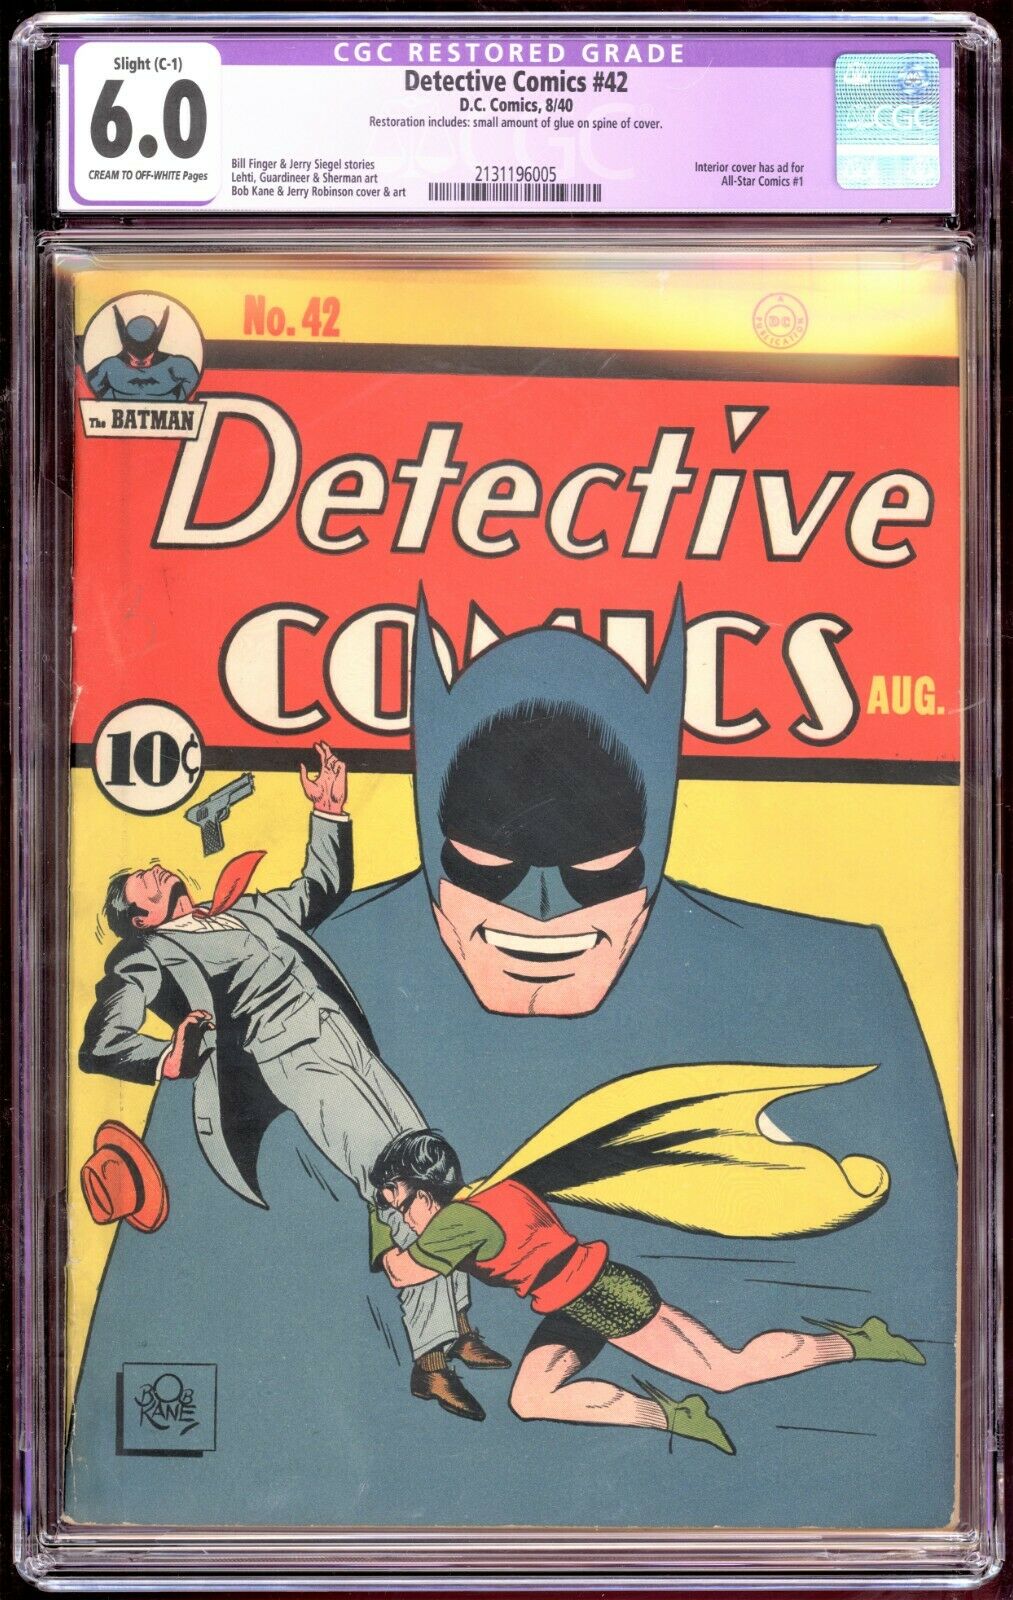 Detective Comics 42 CGC 60 1940 Slight C1 2131196005